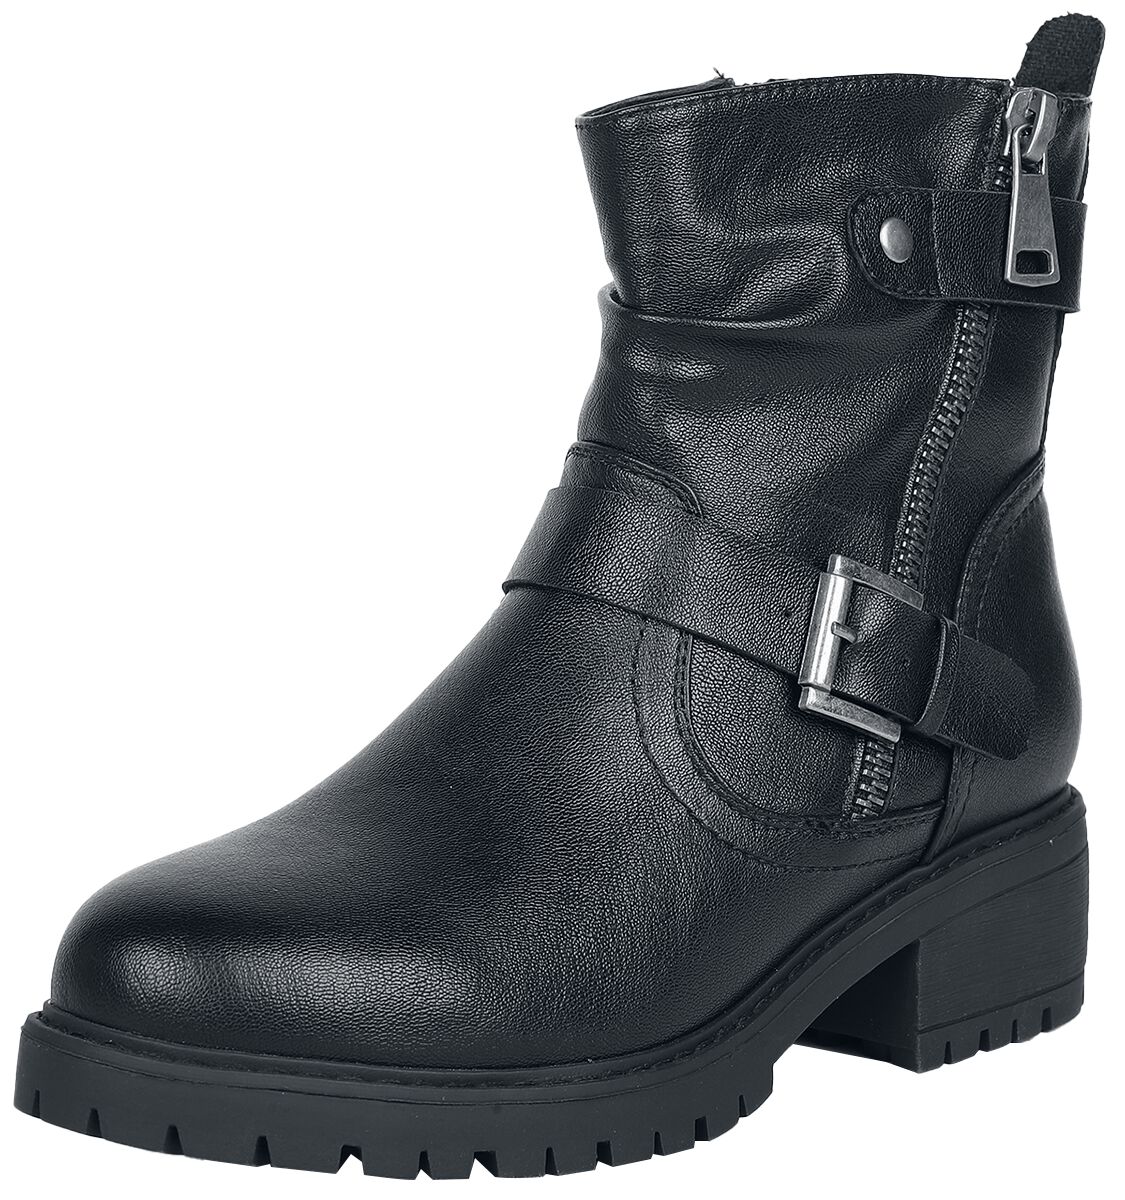 Image of Stivali modello Biker di Black Premium by EMP - Biker boots with zip and buckles - EU37 a EU41 - Donna - nero